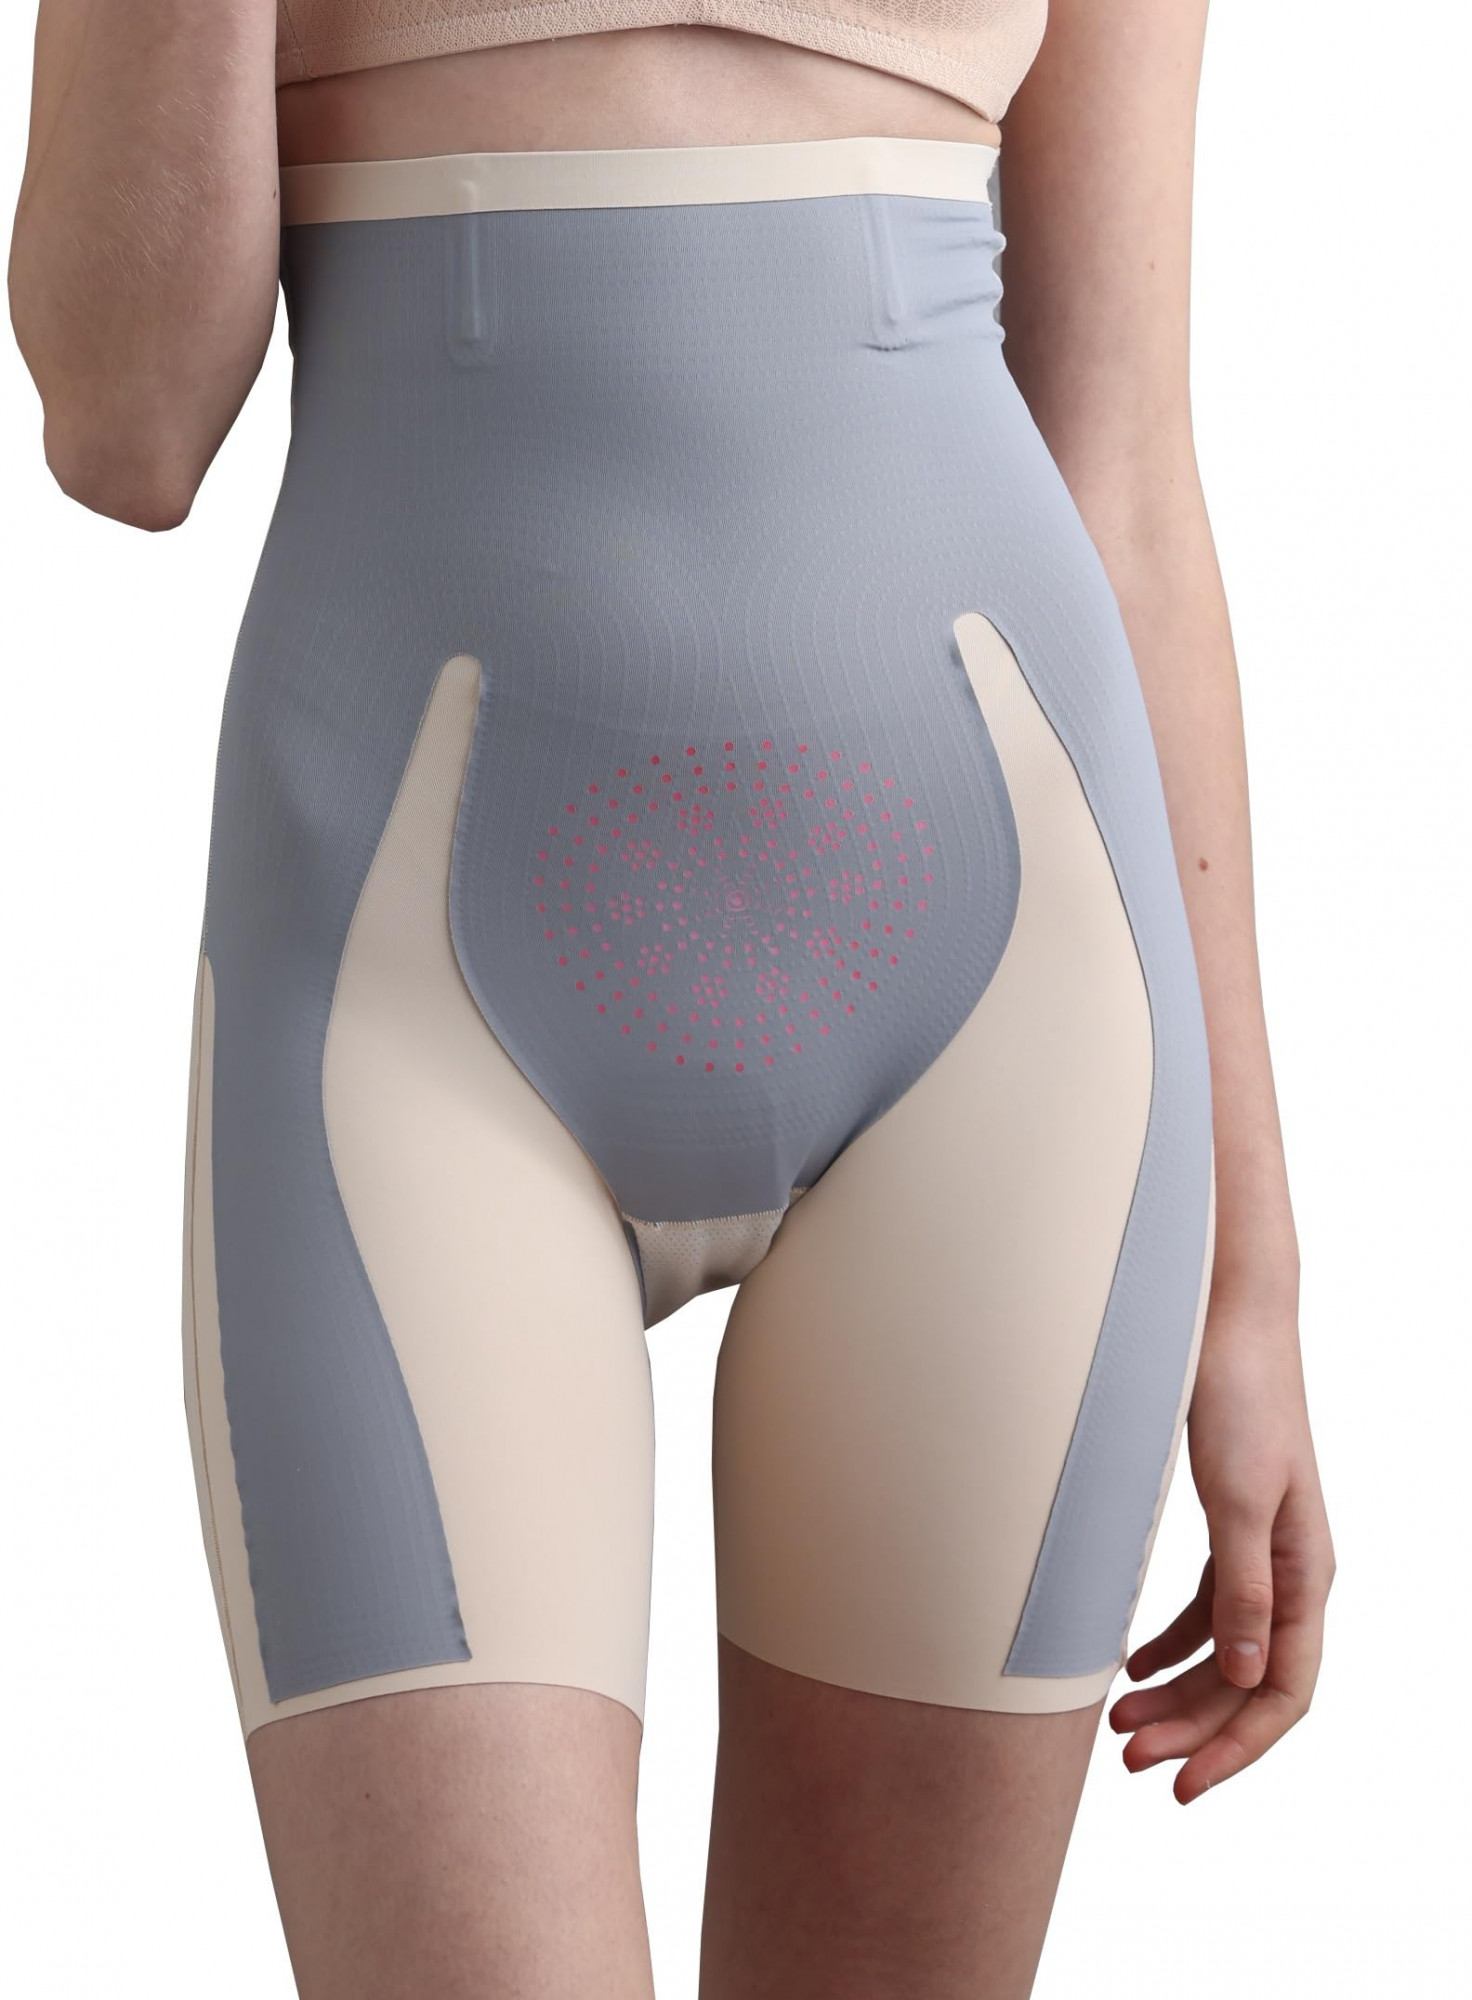 hsr shapewear for women tummy control shorts high waist panty mid thigh body shaper 2xl creamsize 2xl 274822538197138 l